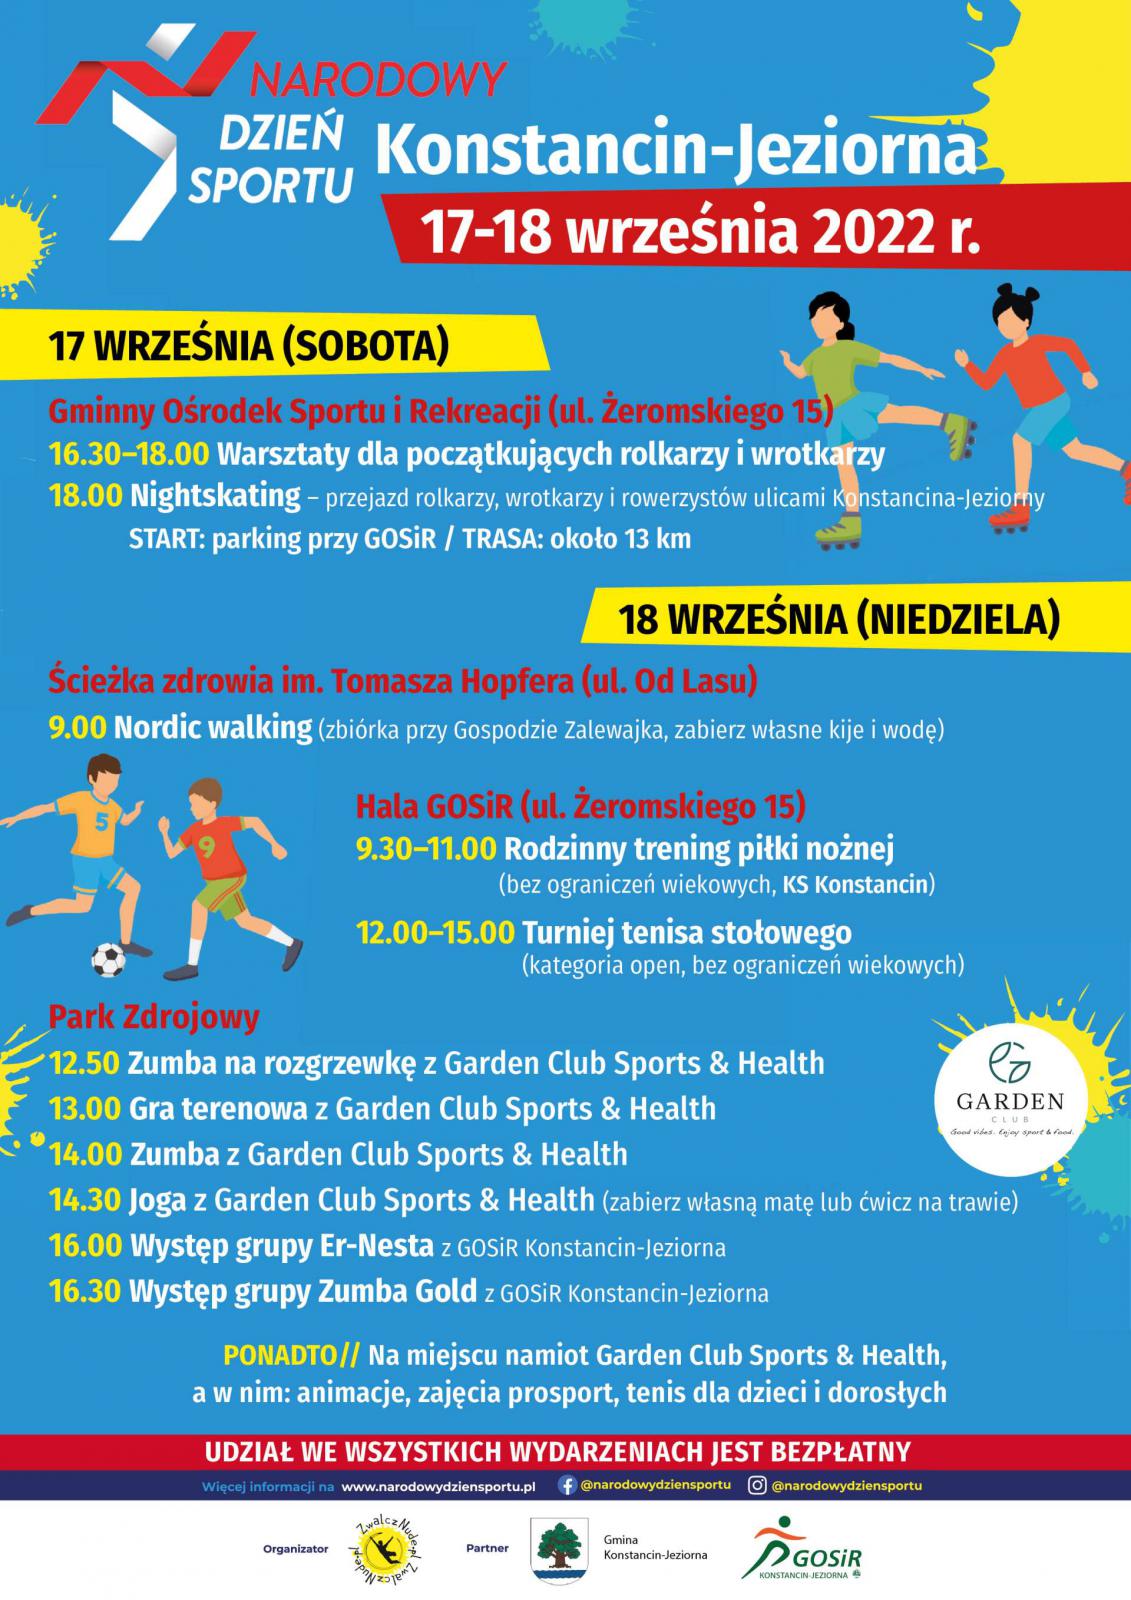 Grafika wektorowa promująca Narodowy Dzień Sportu w Konstancinie-Jeziornie. Treść znajdująca się na plakacie zawarta jest w artykule.